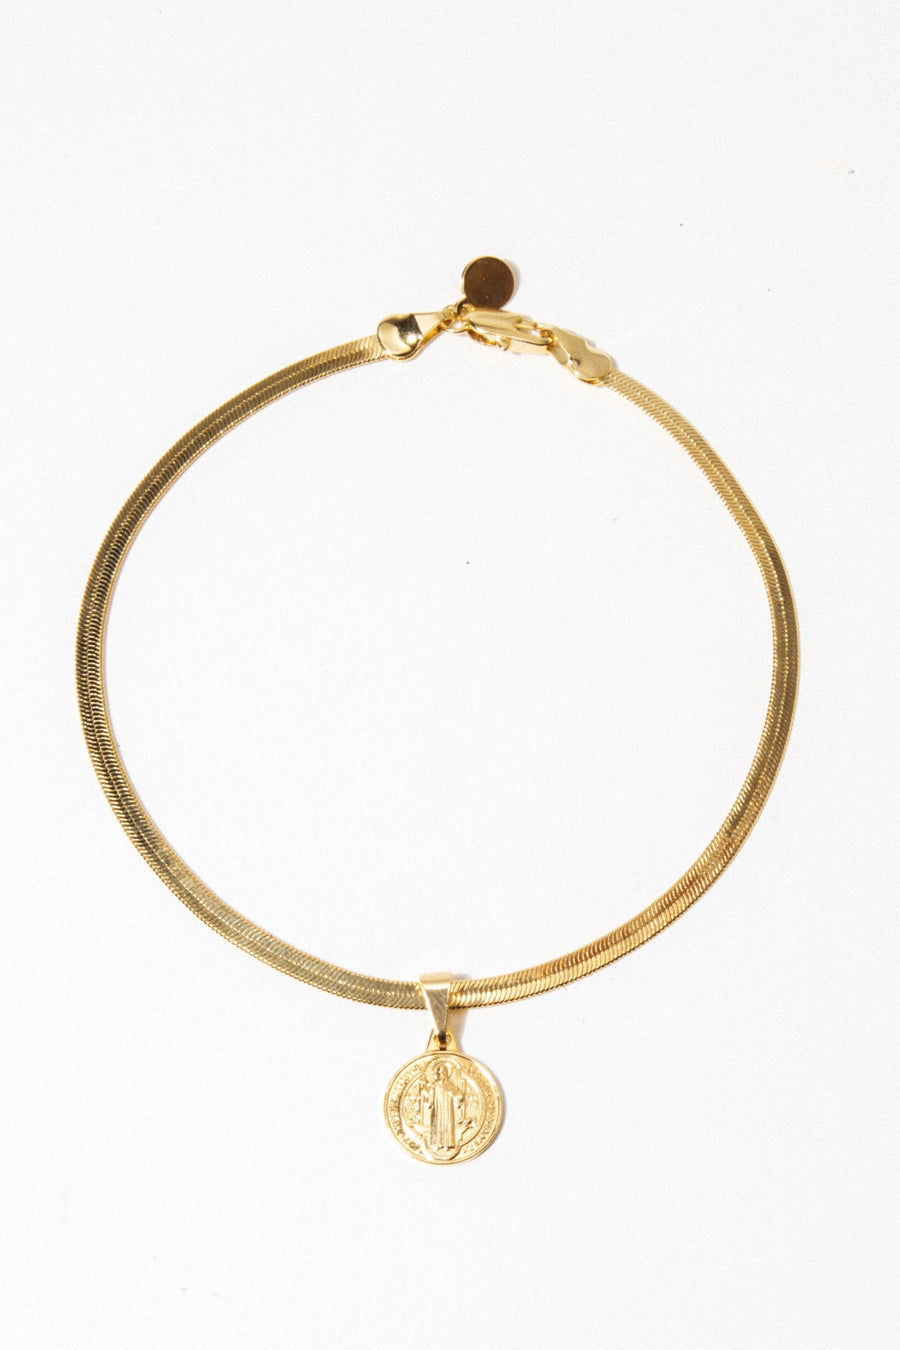 Dona Italia Jewelry Gold St. Benedict Anklet